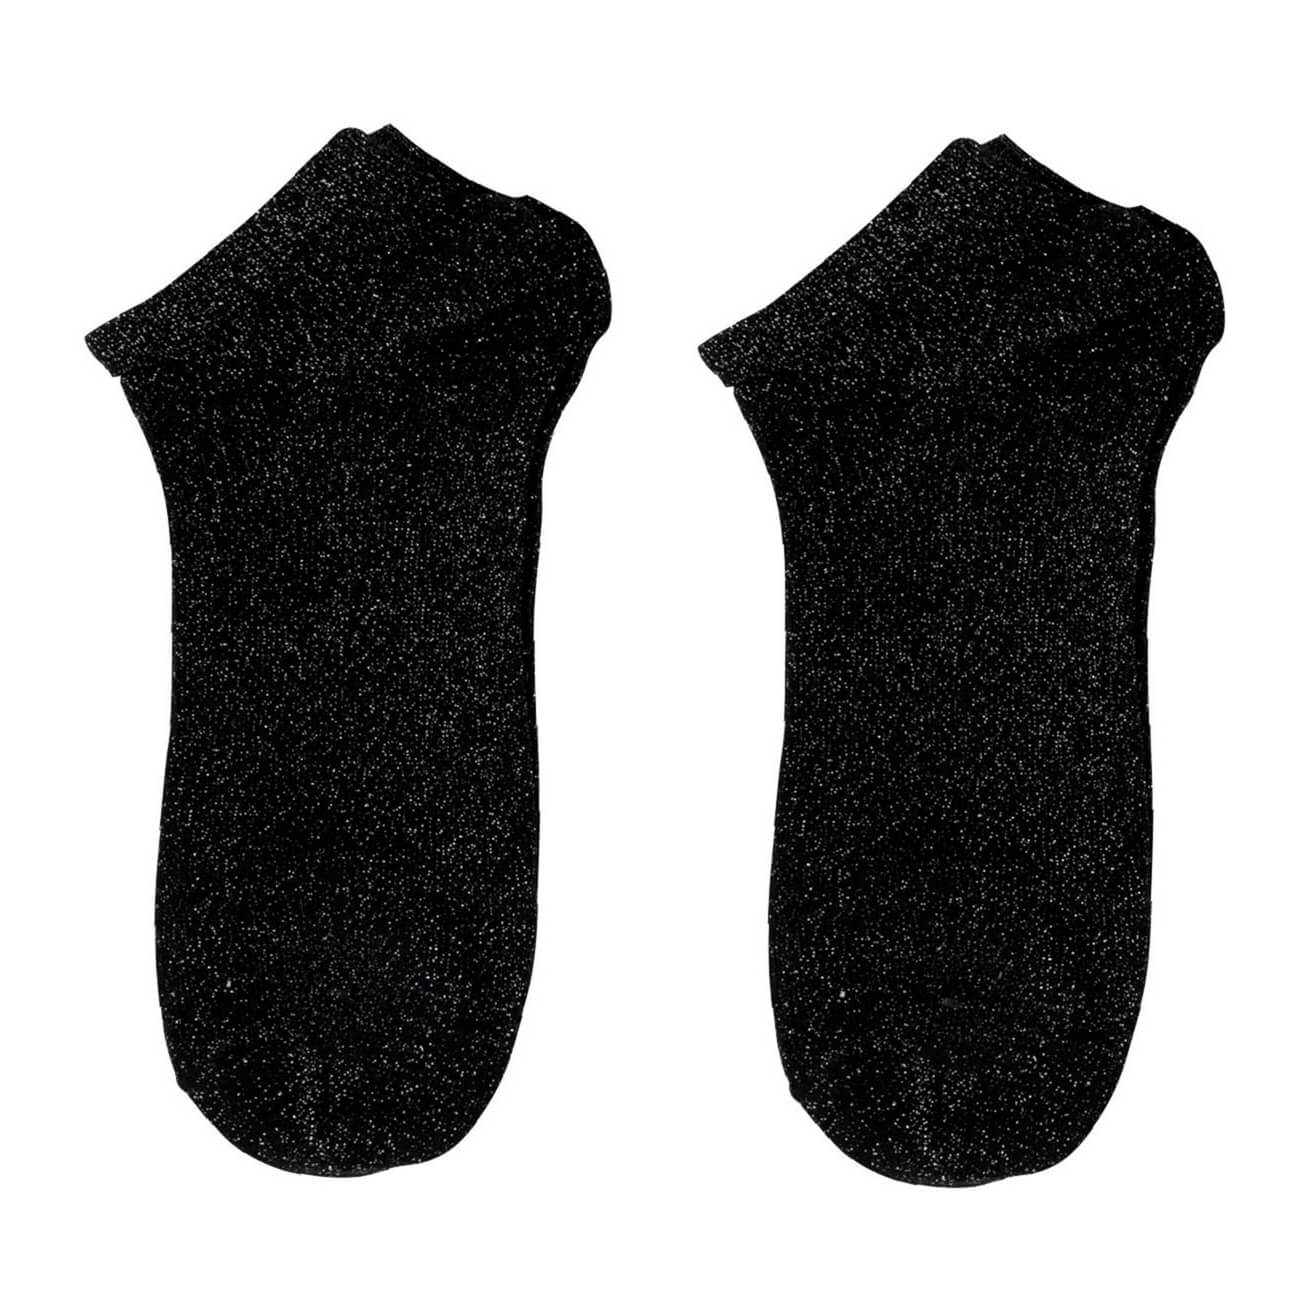 Носки женские, р. 39-41, хлопок/полиэстер, черные, Glint носки женские р 38 41 хлопок полиэстер черные basic